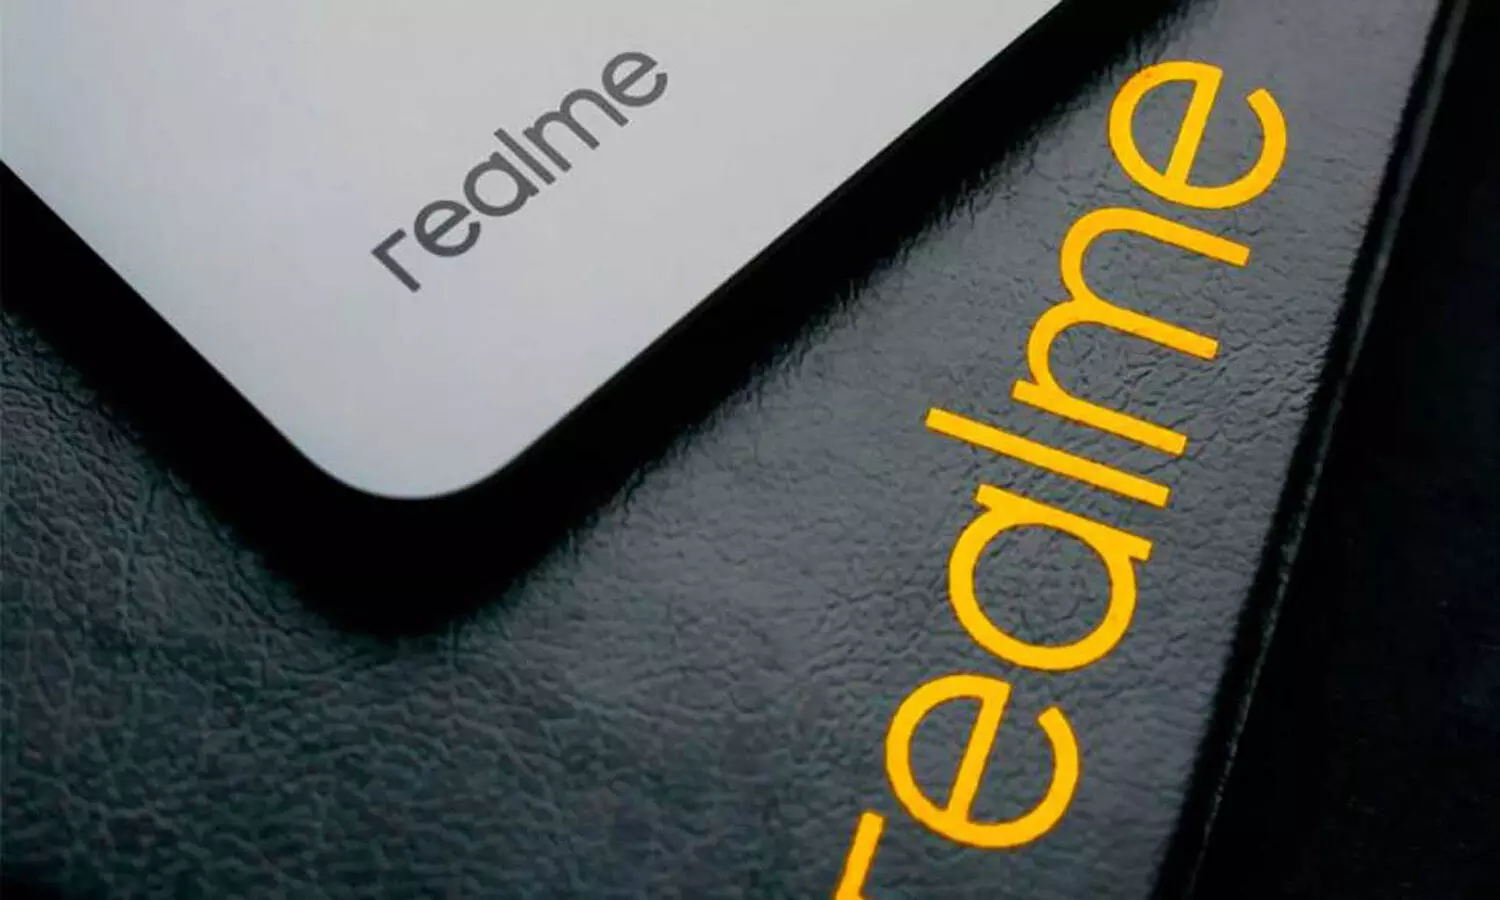 Realme Surpasses 200 Million Shipments Milestone